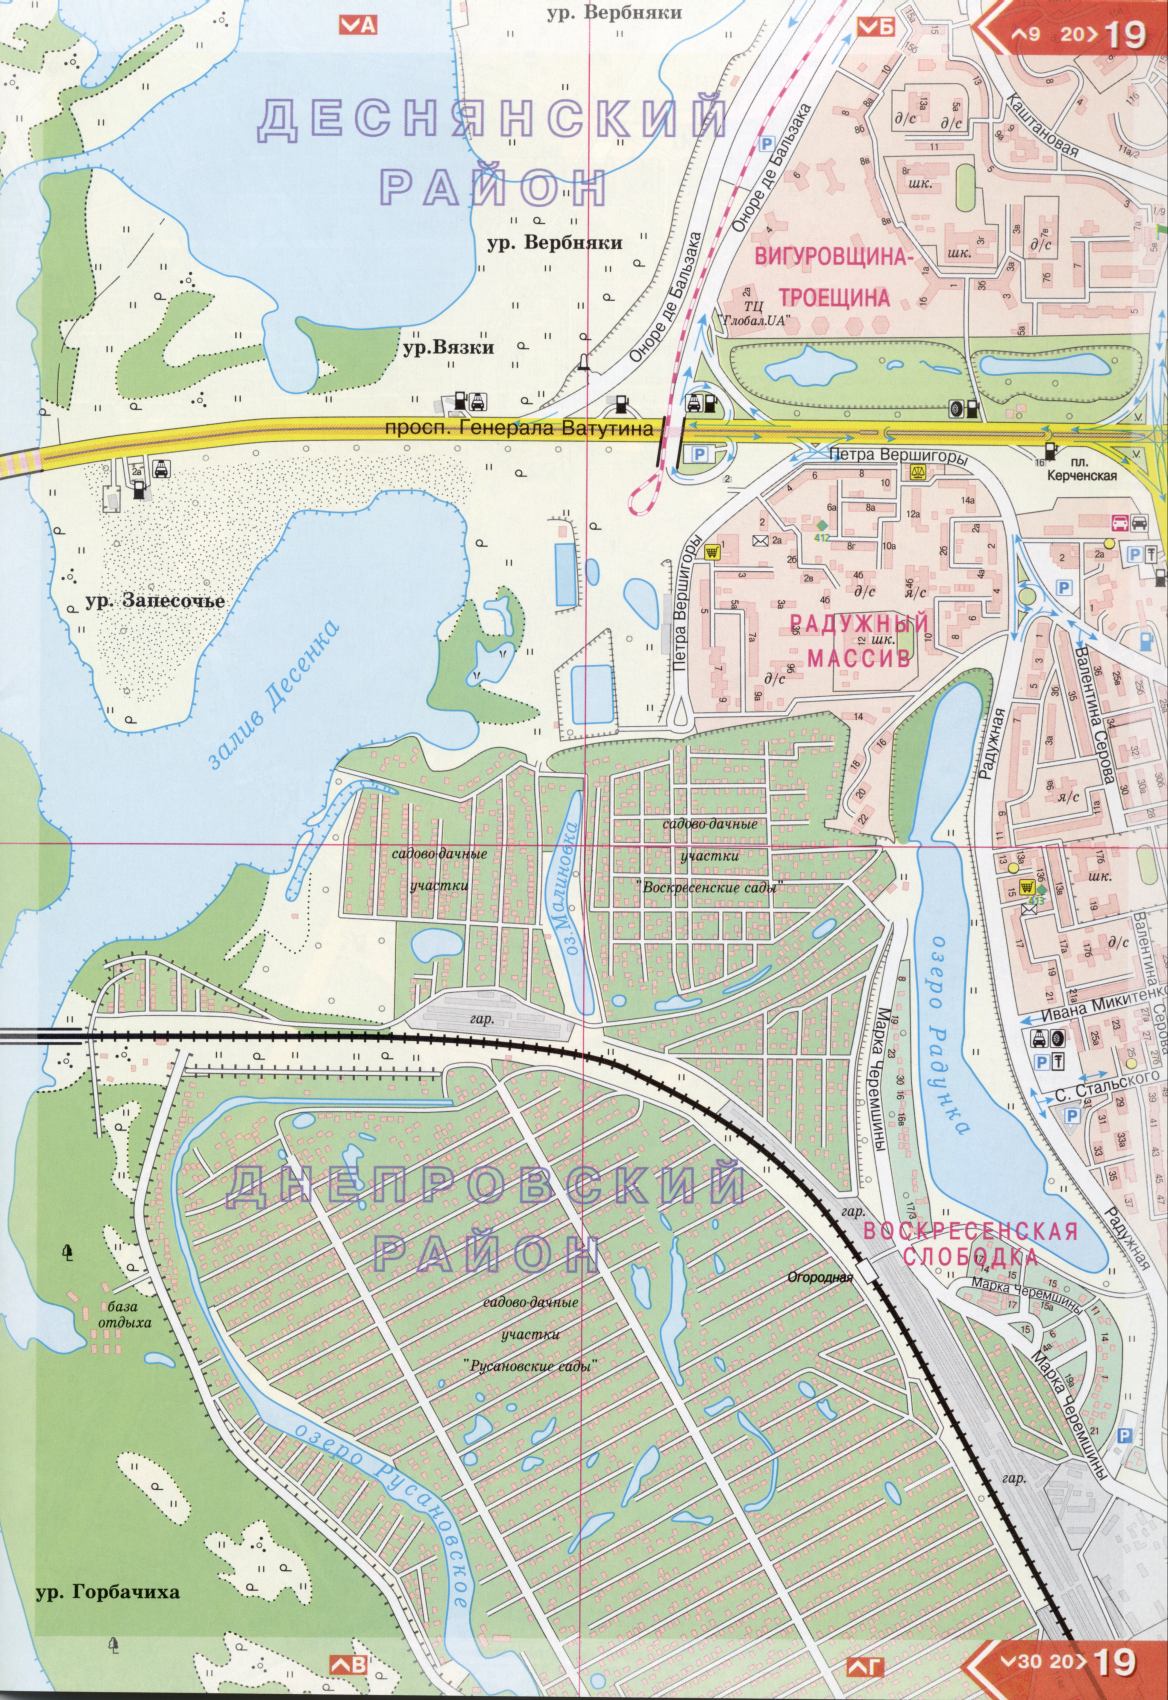 Kiew Karte Details 1cm = 150m für 45 Blatt. Karte von Kiew aus dem Atlas von Autobahnen. Laden Sie eine detaillierte Karte, G1